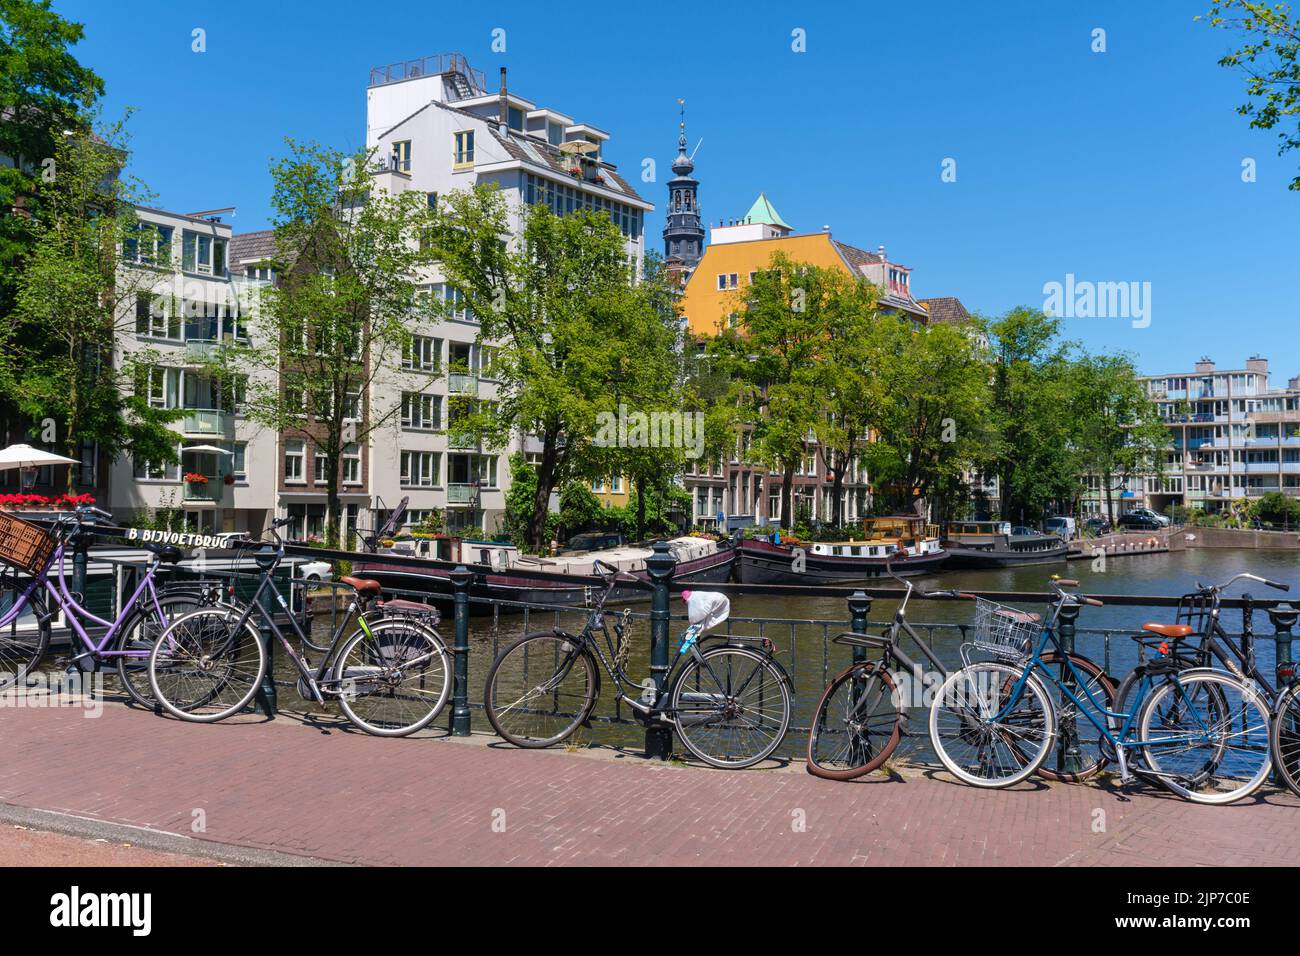 Ámsterdam, Países Bajos - 22 de junio de 2022: El paisaje urbano de Ámsterdam con bicicletas en un puente Foto de stock